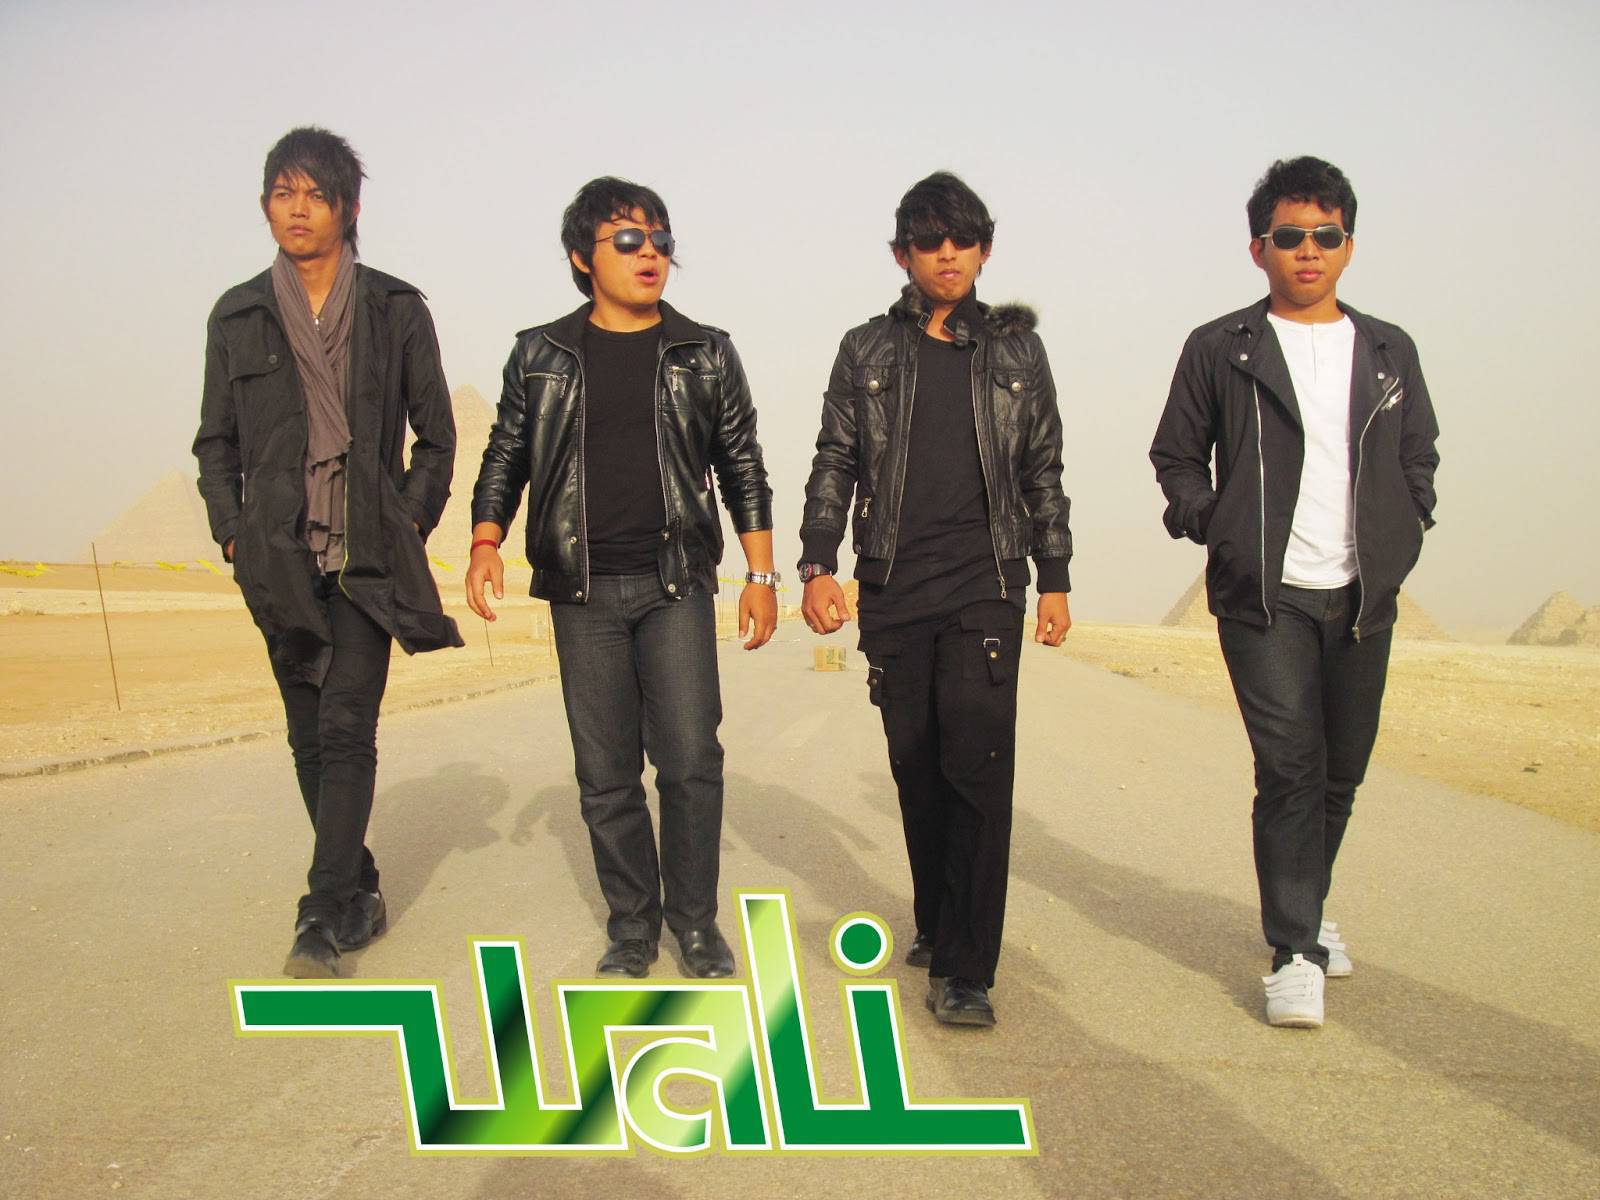 Benefits Of Downloading Wali Band Mp3 Songs From Gudang Lagu